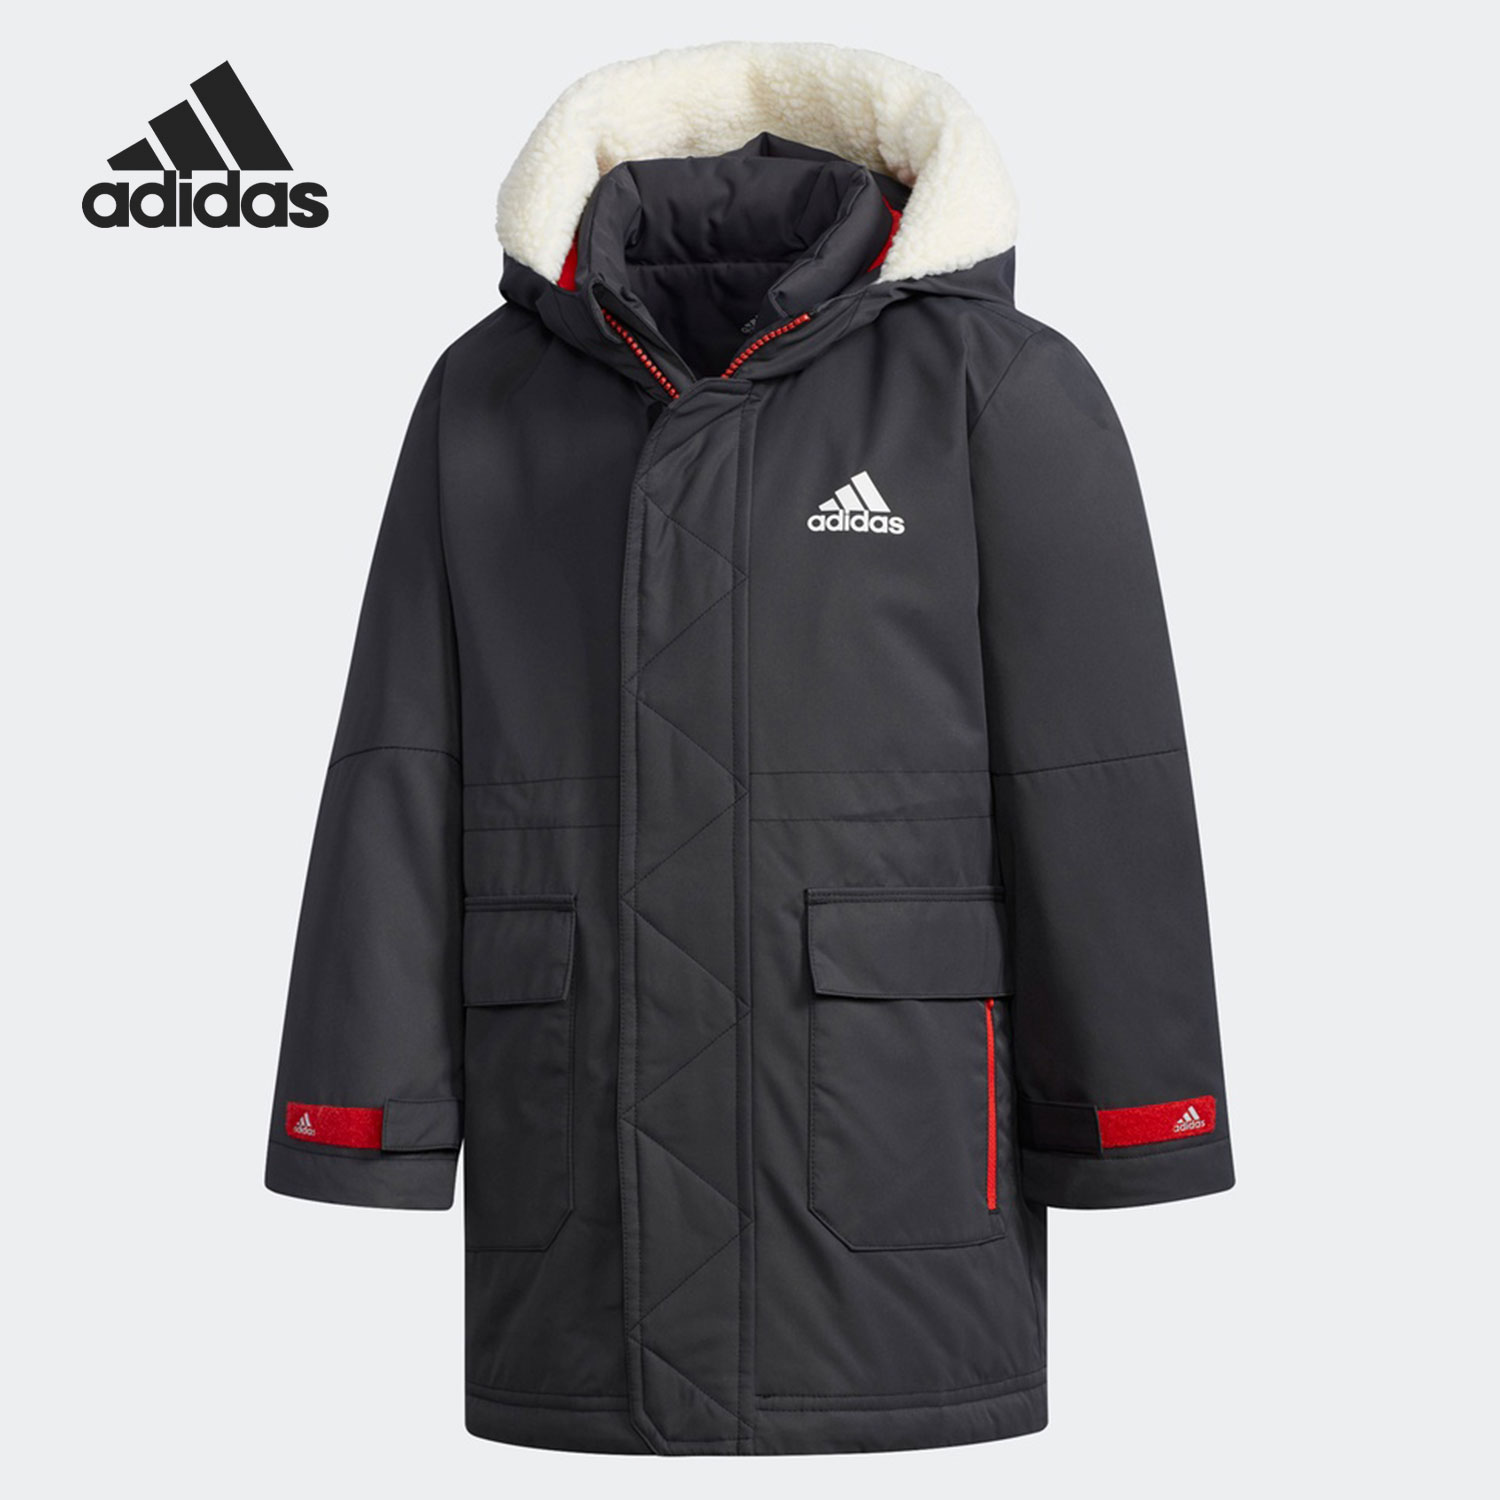 Adidas/阿迪达斯正品2020冬季新款小童保暖连帽休闲羽绒服 DM7120